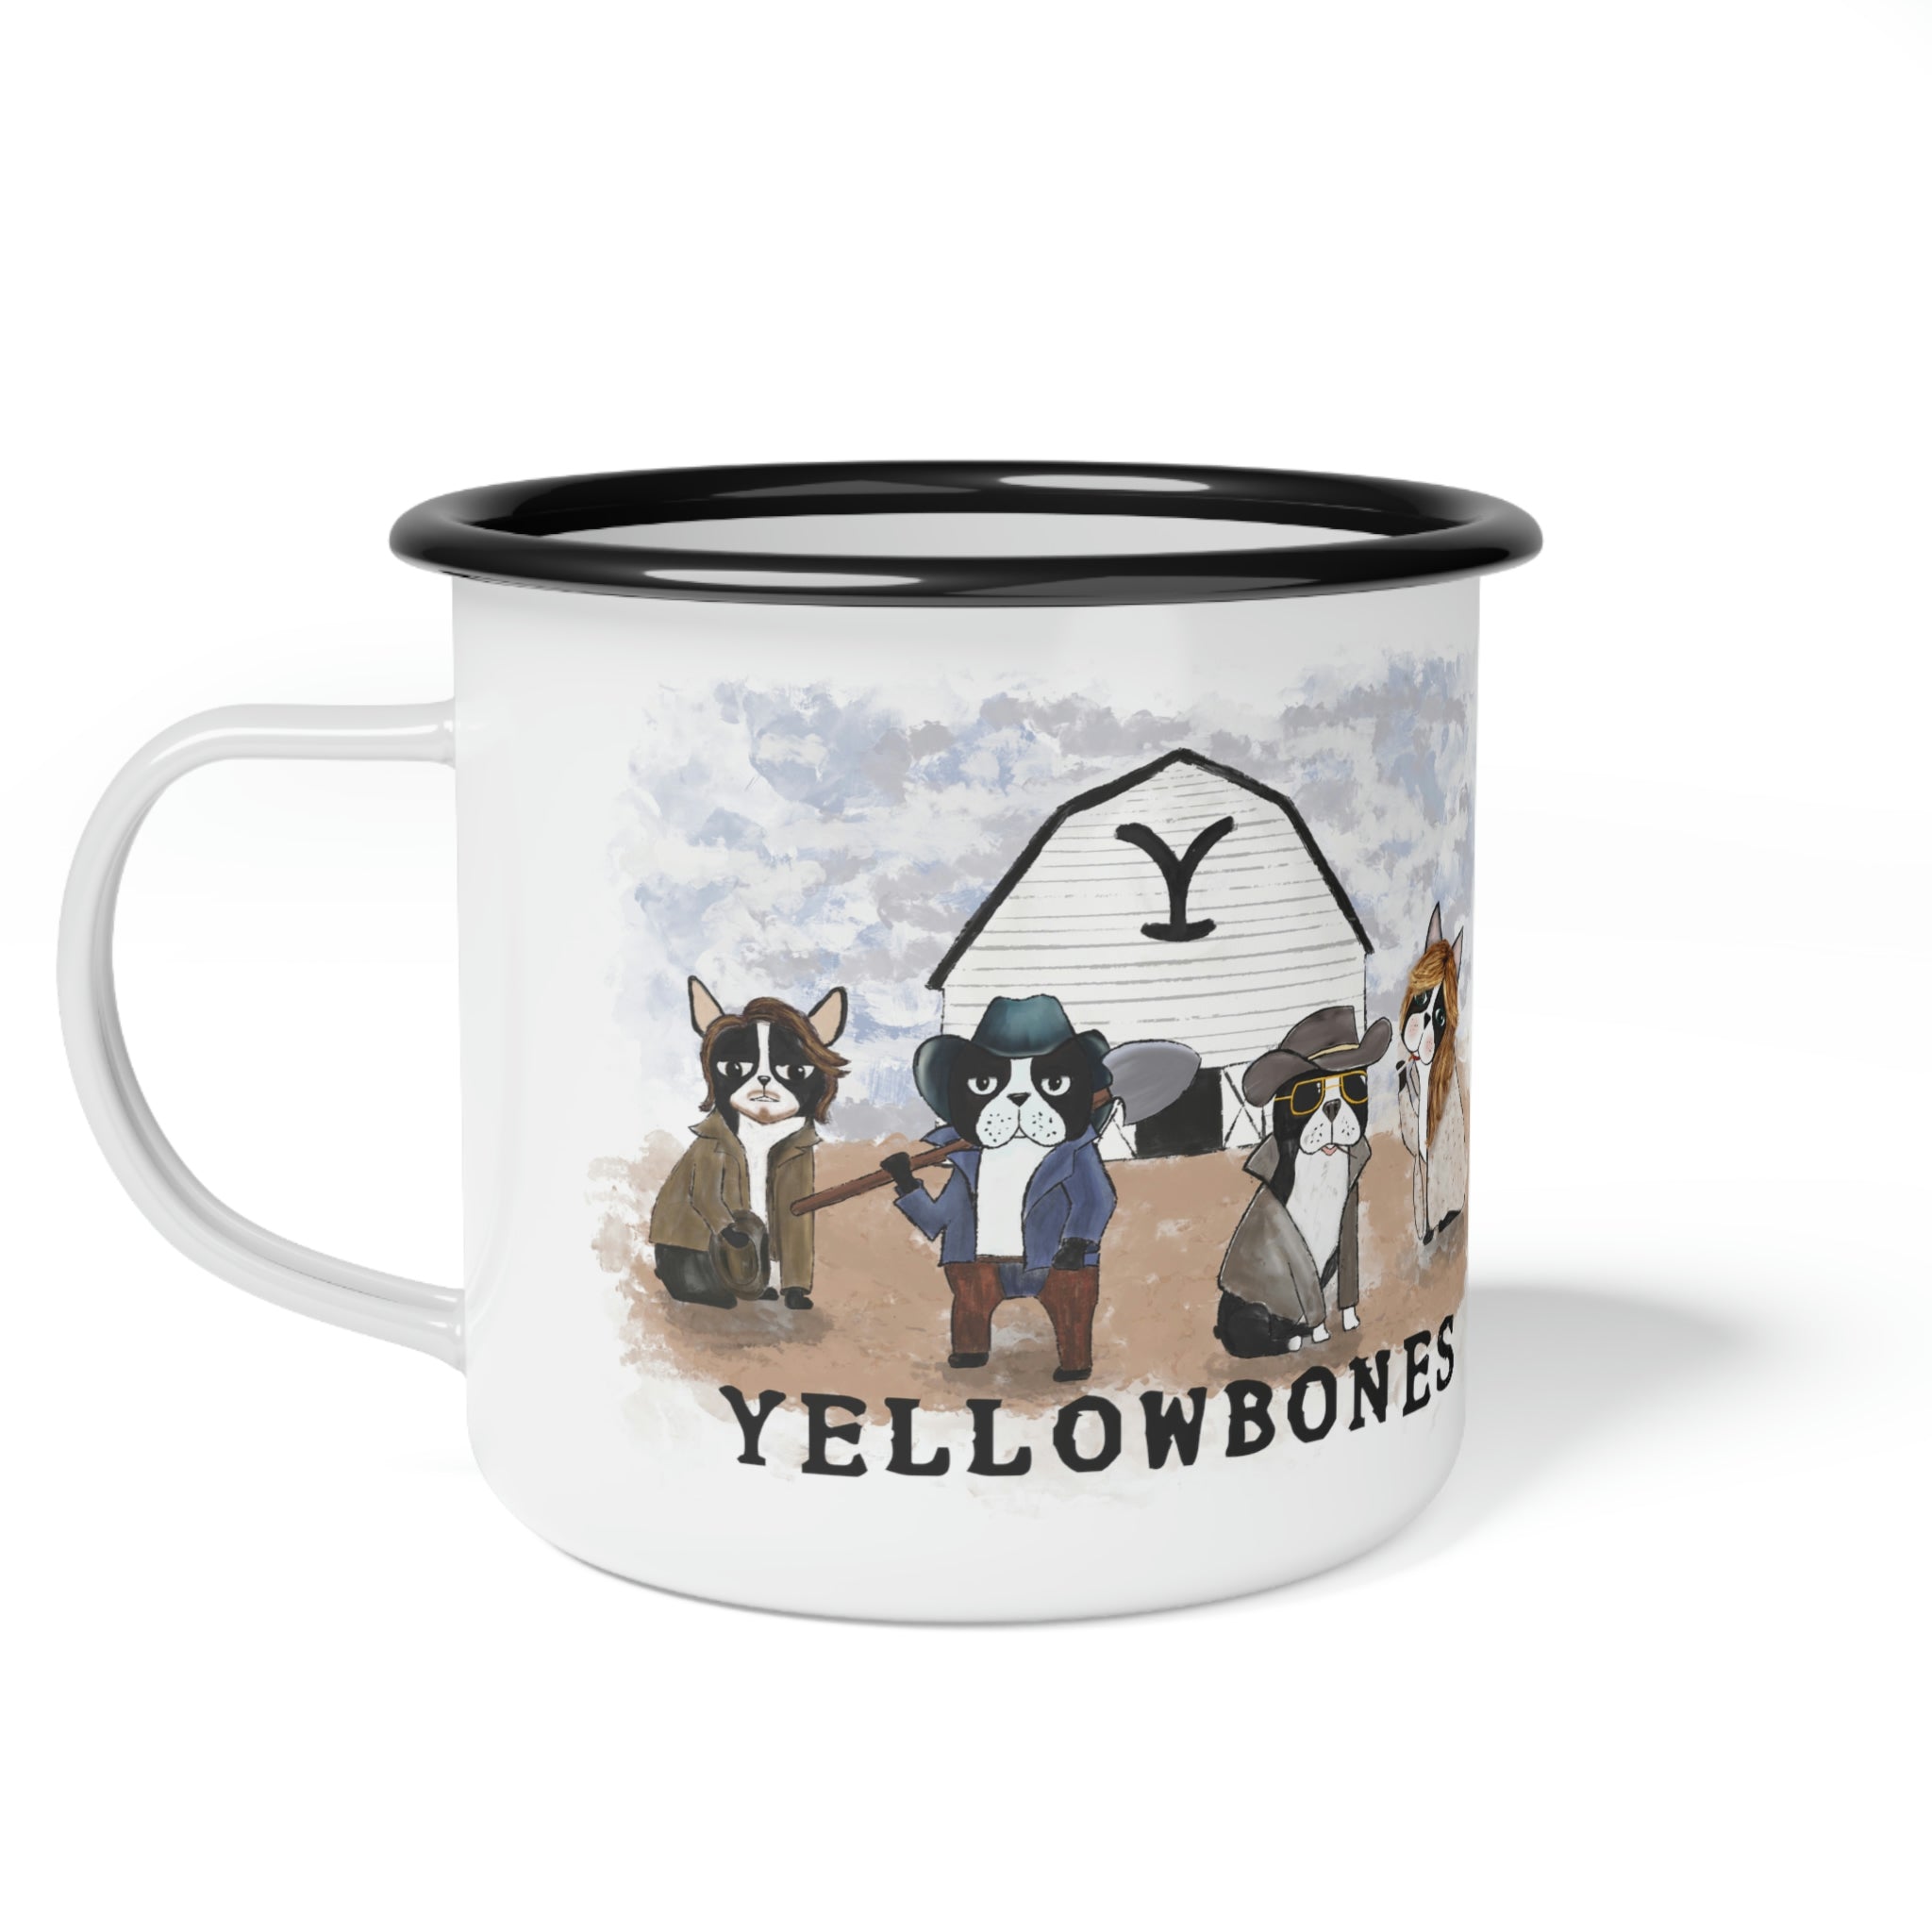 Yellowbones Camping Mug Camp Cup